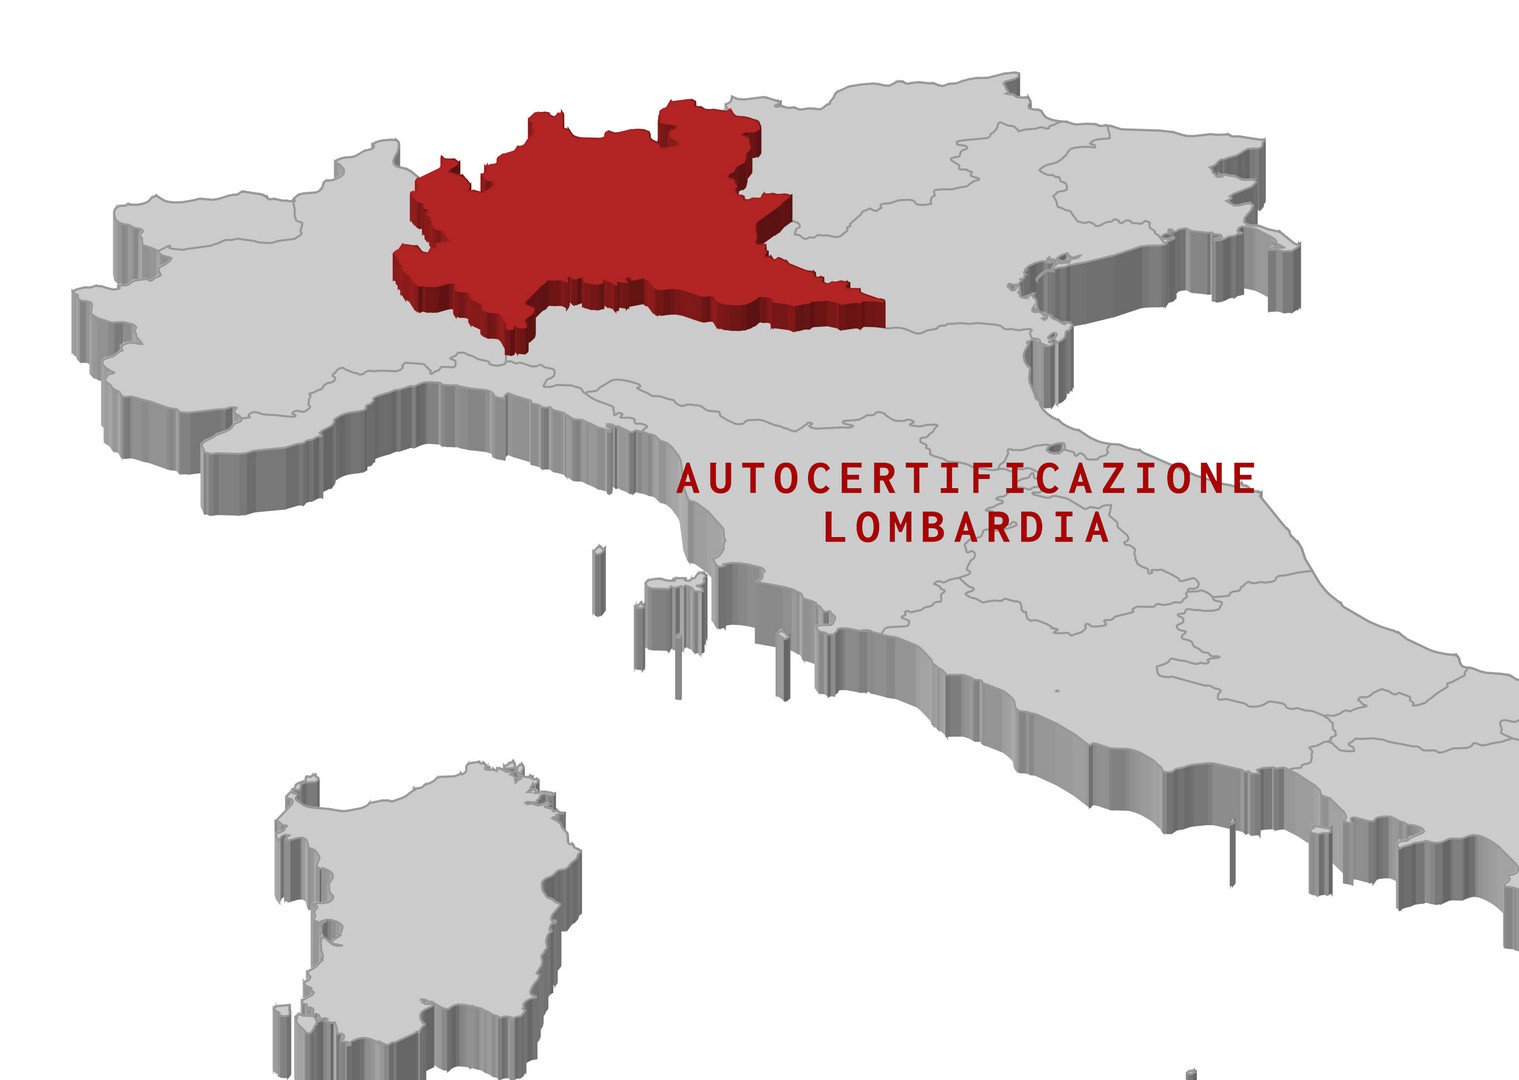 Autocertificazione Lombardia novembre 2020